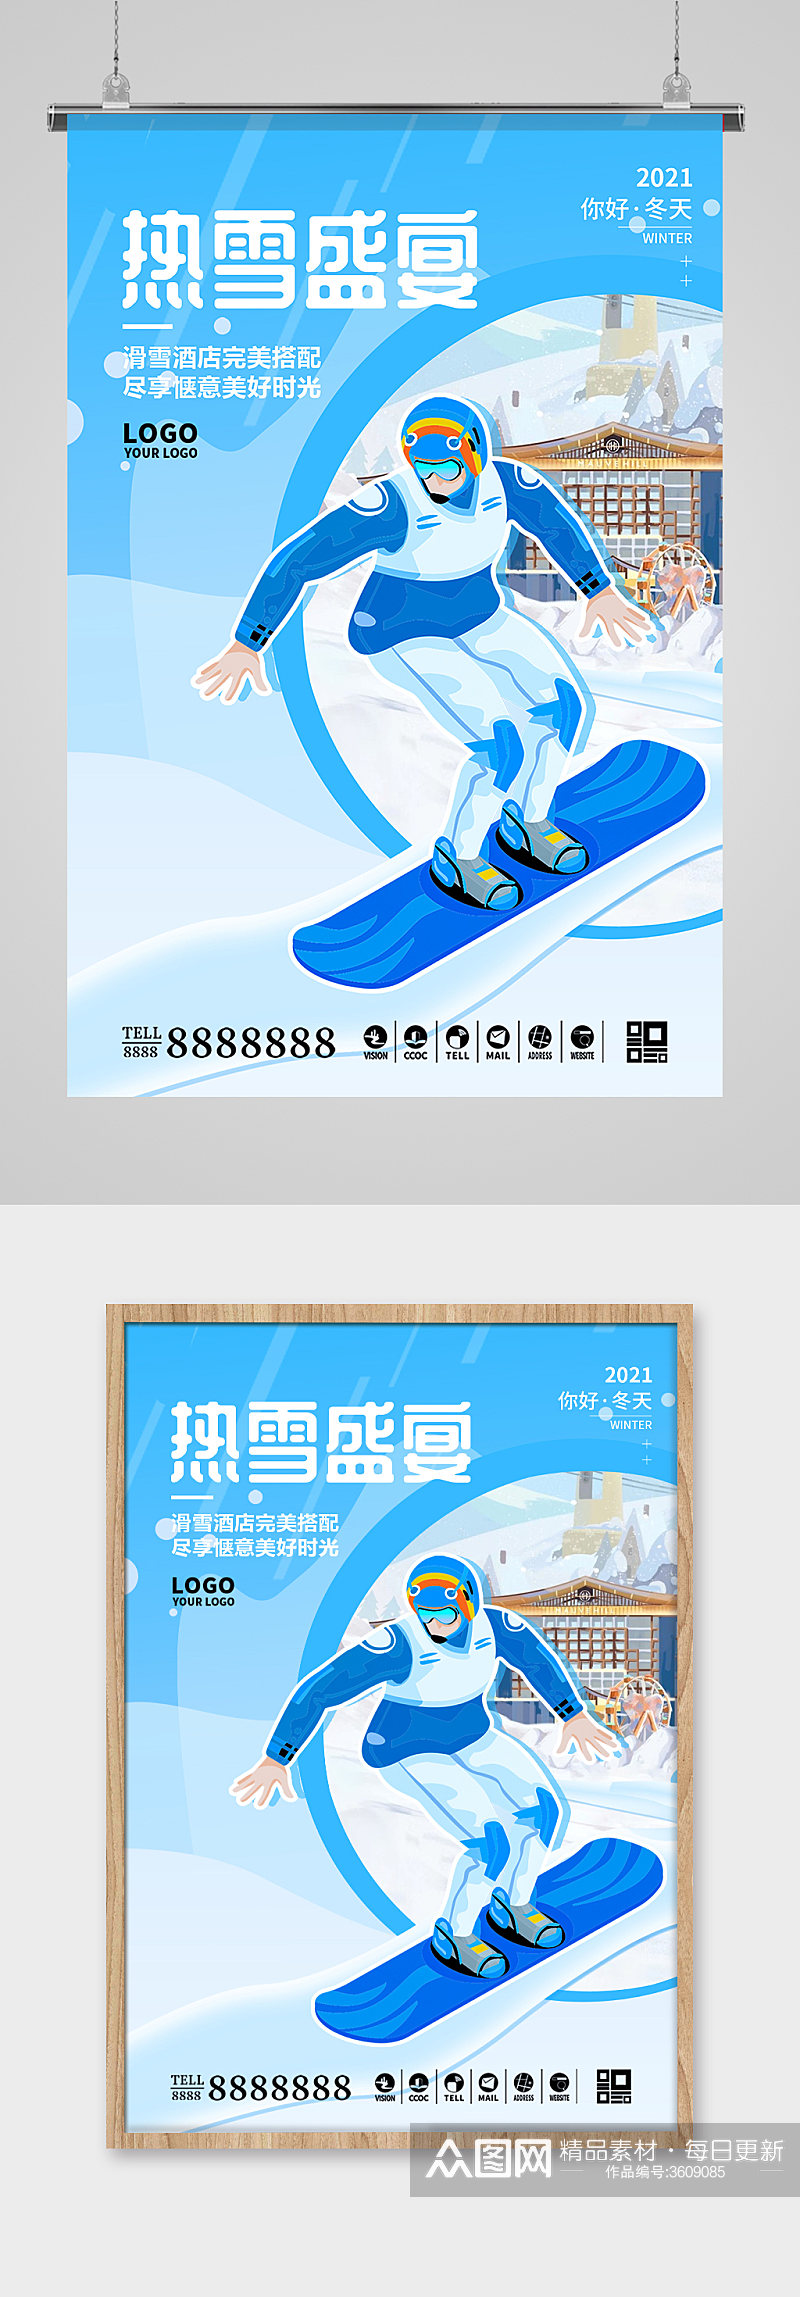 北京冬奥会滑雪项目海报素材